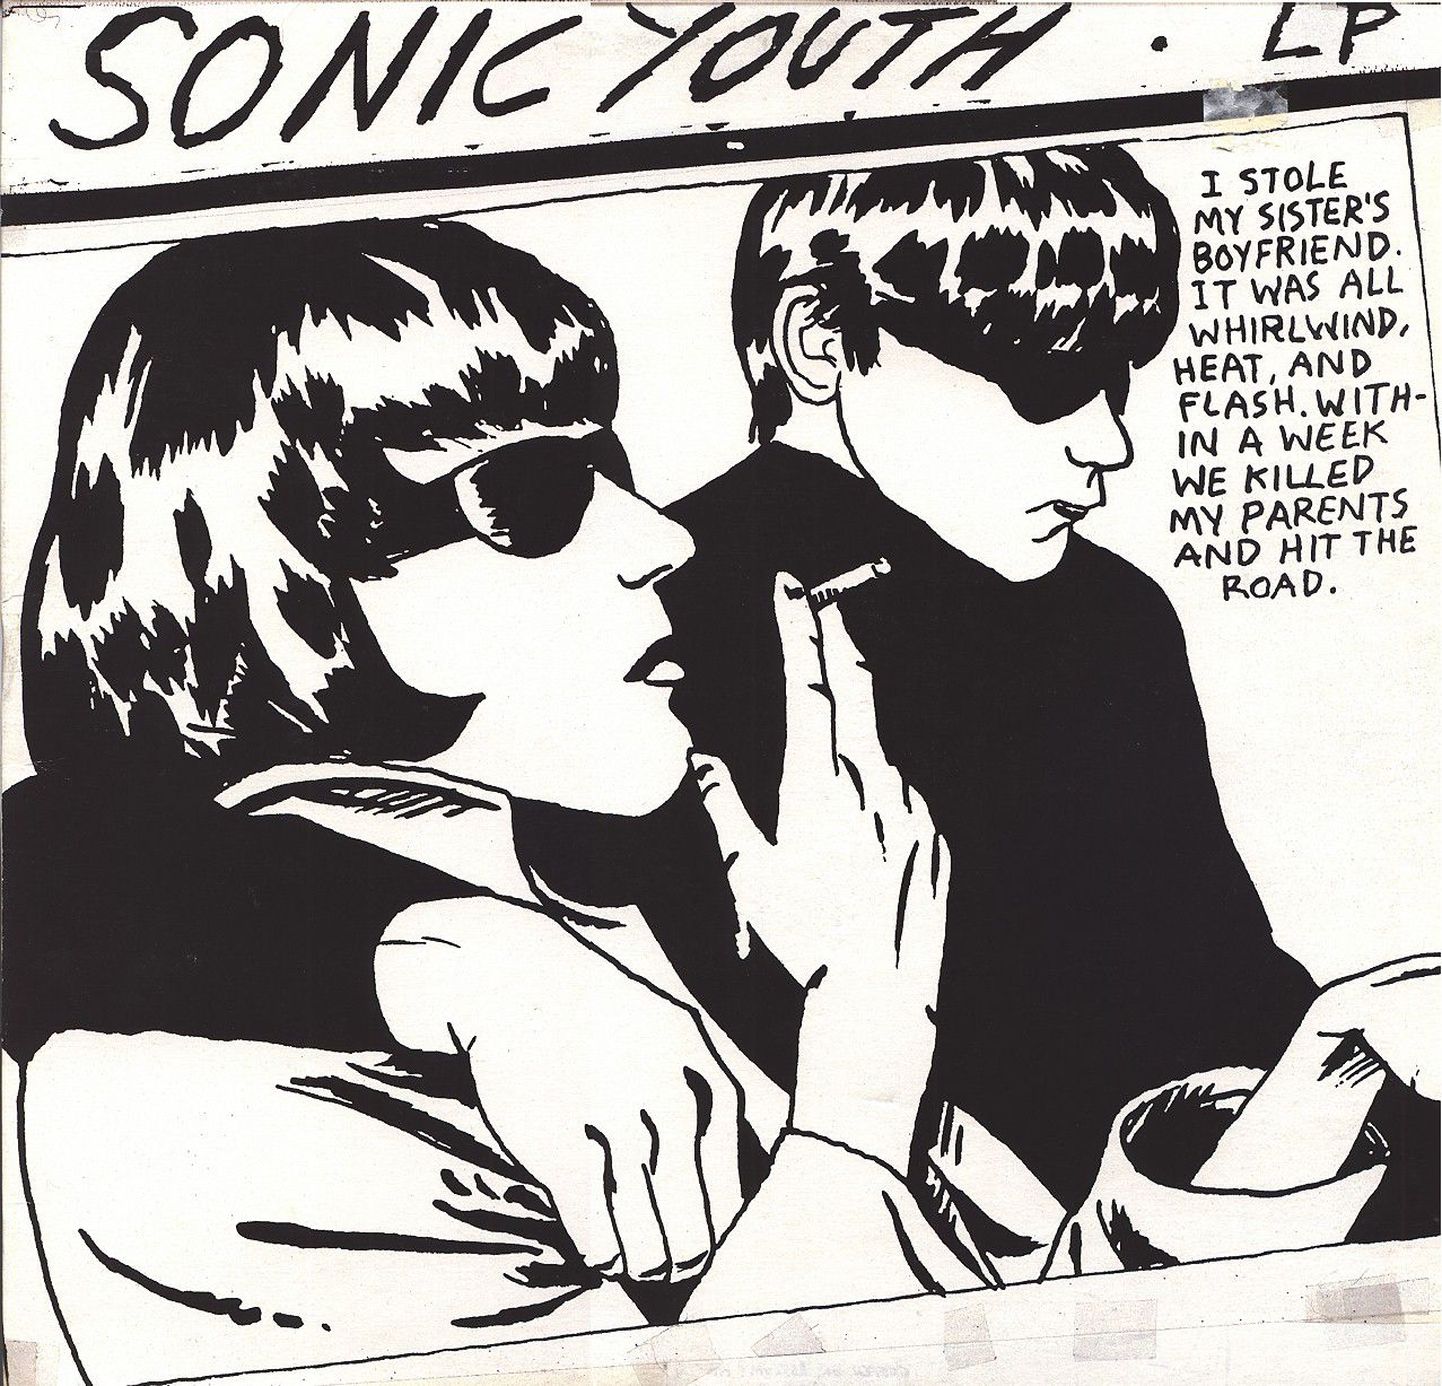 Raymond Pettiboni kujundatud Sonic Youthi "Goo"